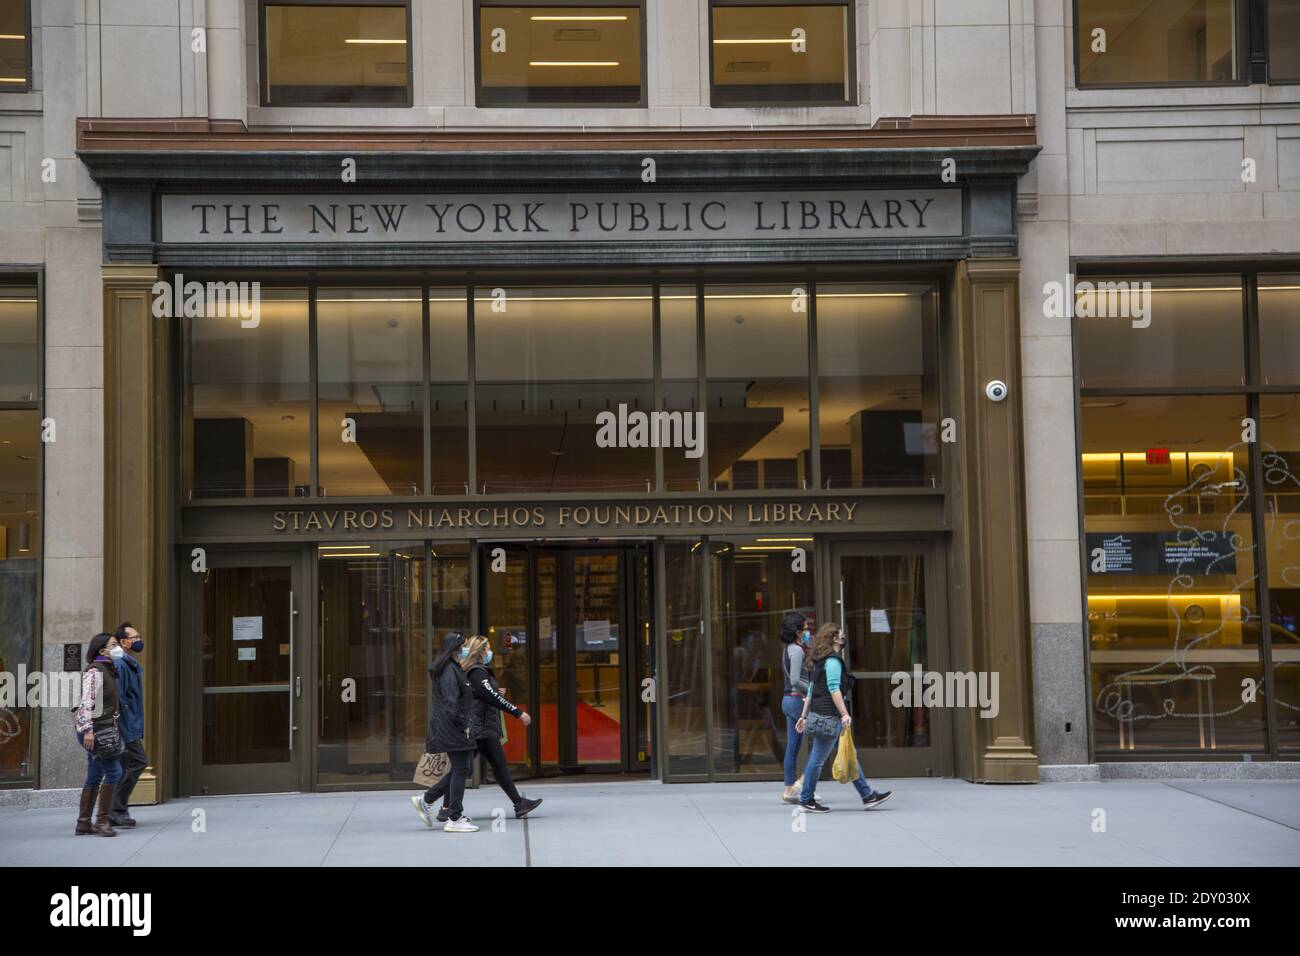 Die größte zirkulierende Zweigstelle der New York Public Library – die Stavros Niarchos Foundation Library in der 5th Avenue in der 40th Street in Midtown Manhattan, New York City. Stockfoto